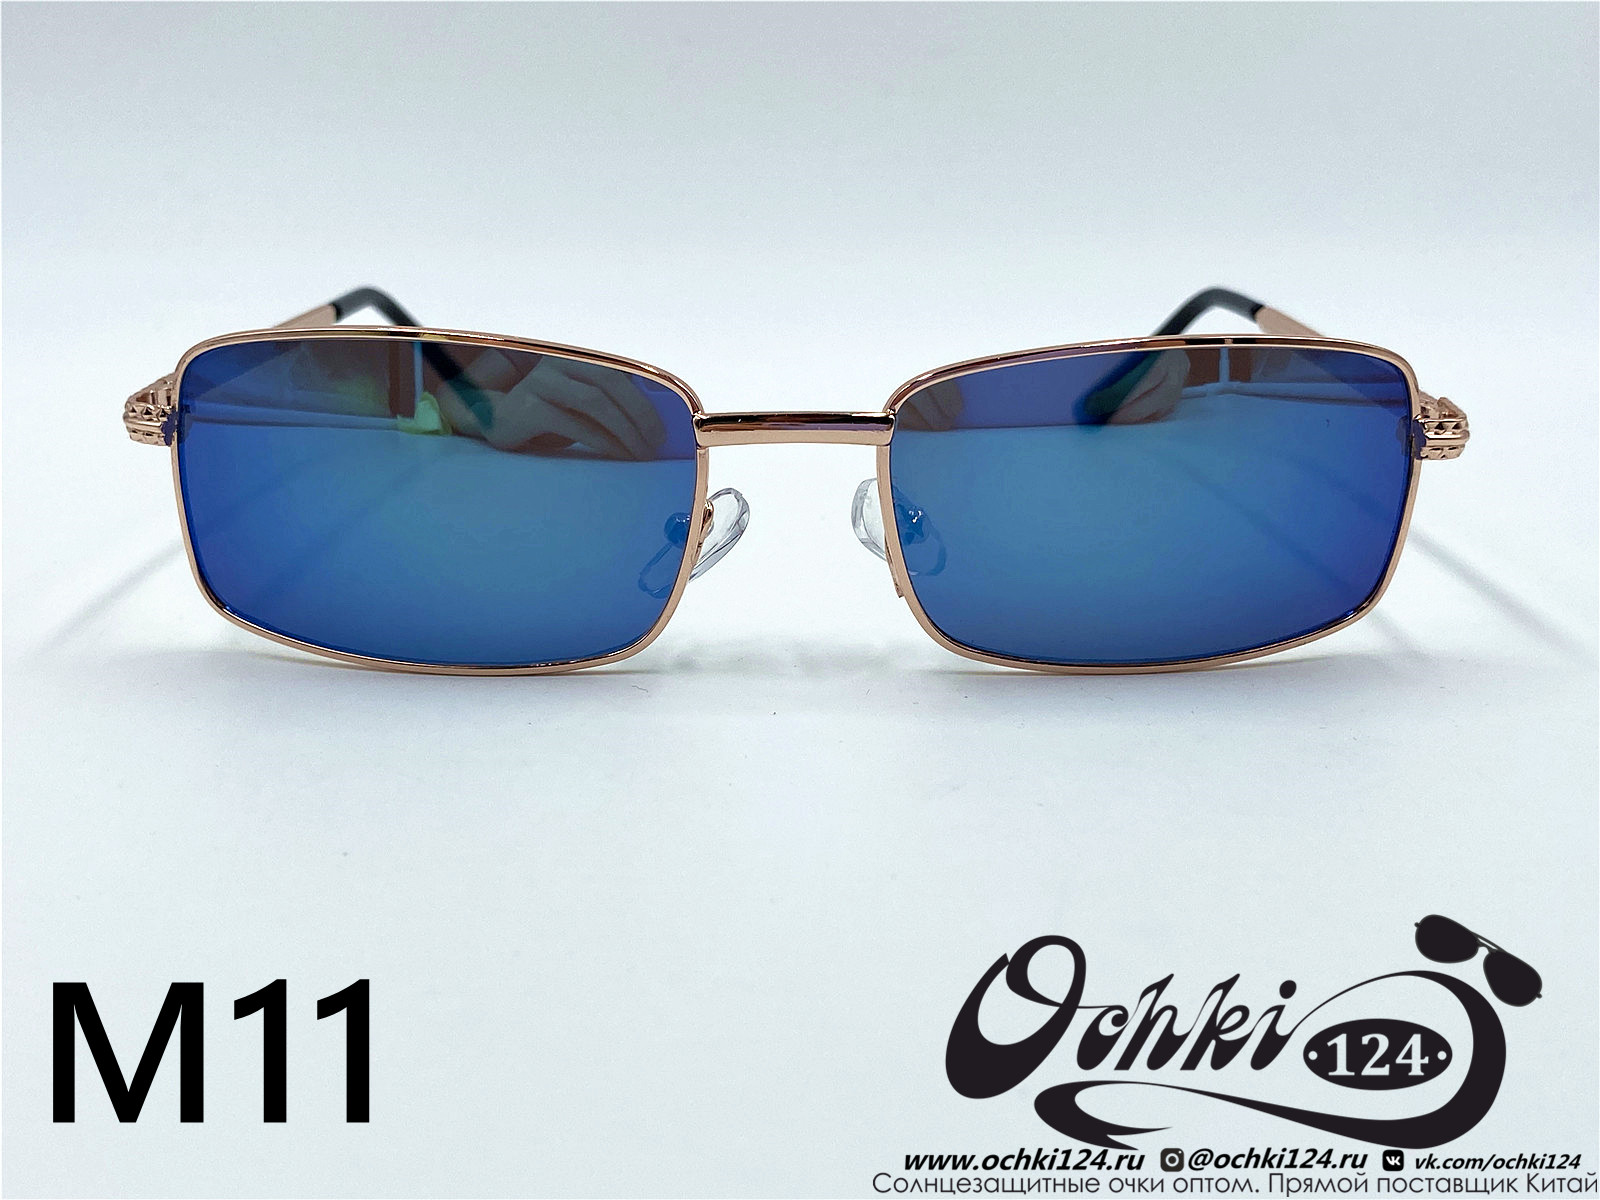  Солнцезащитные очки картинка 2022 Мужские Узкие и длинные KaiFeng M11-7 